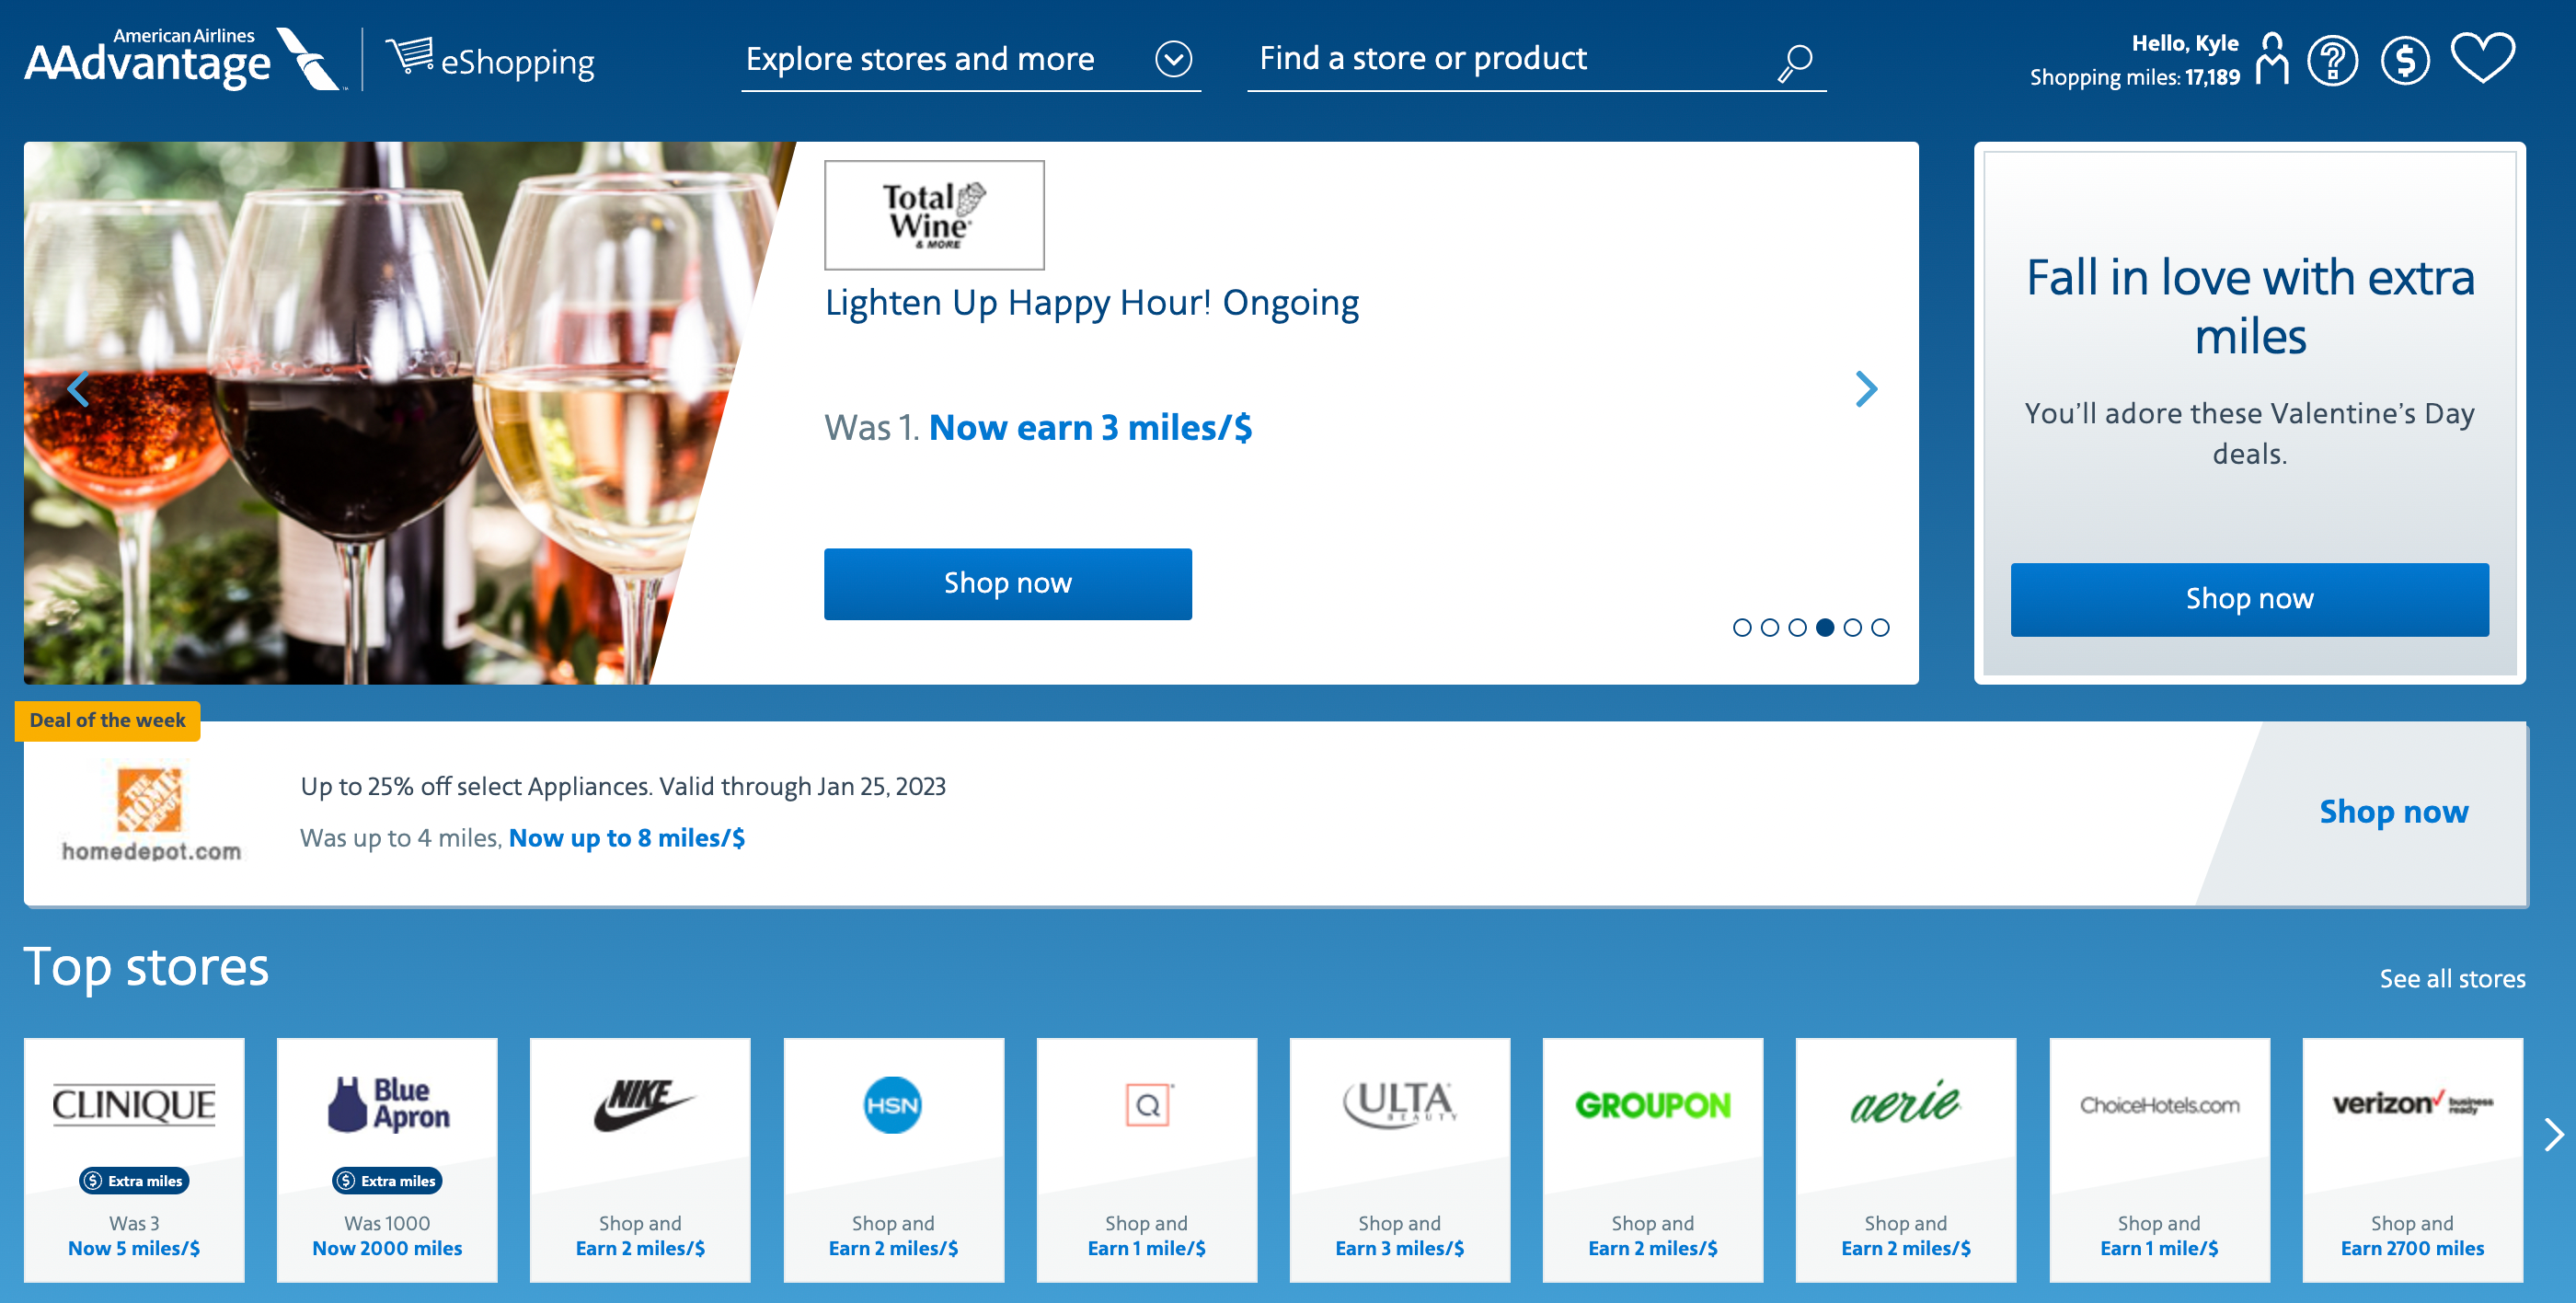 AA Shopping Portal featured deals